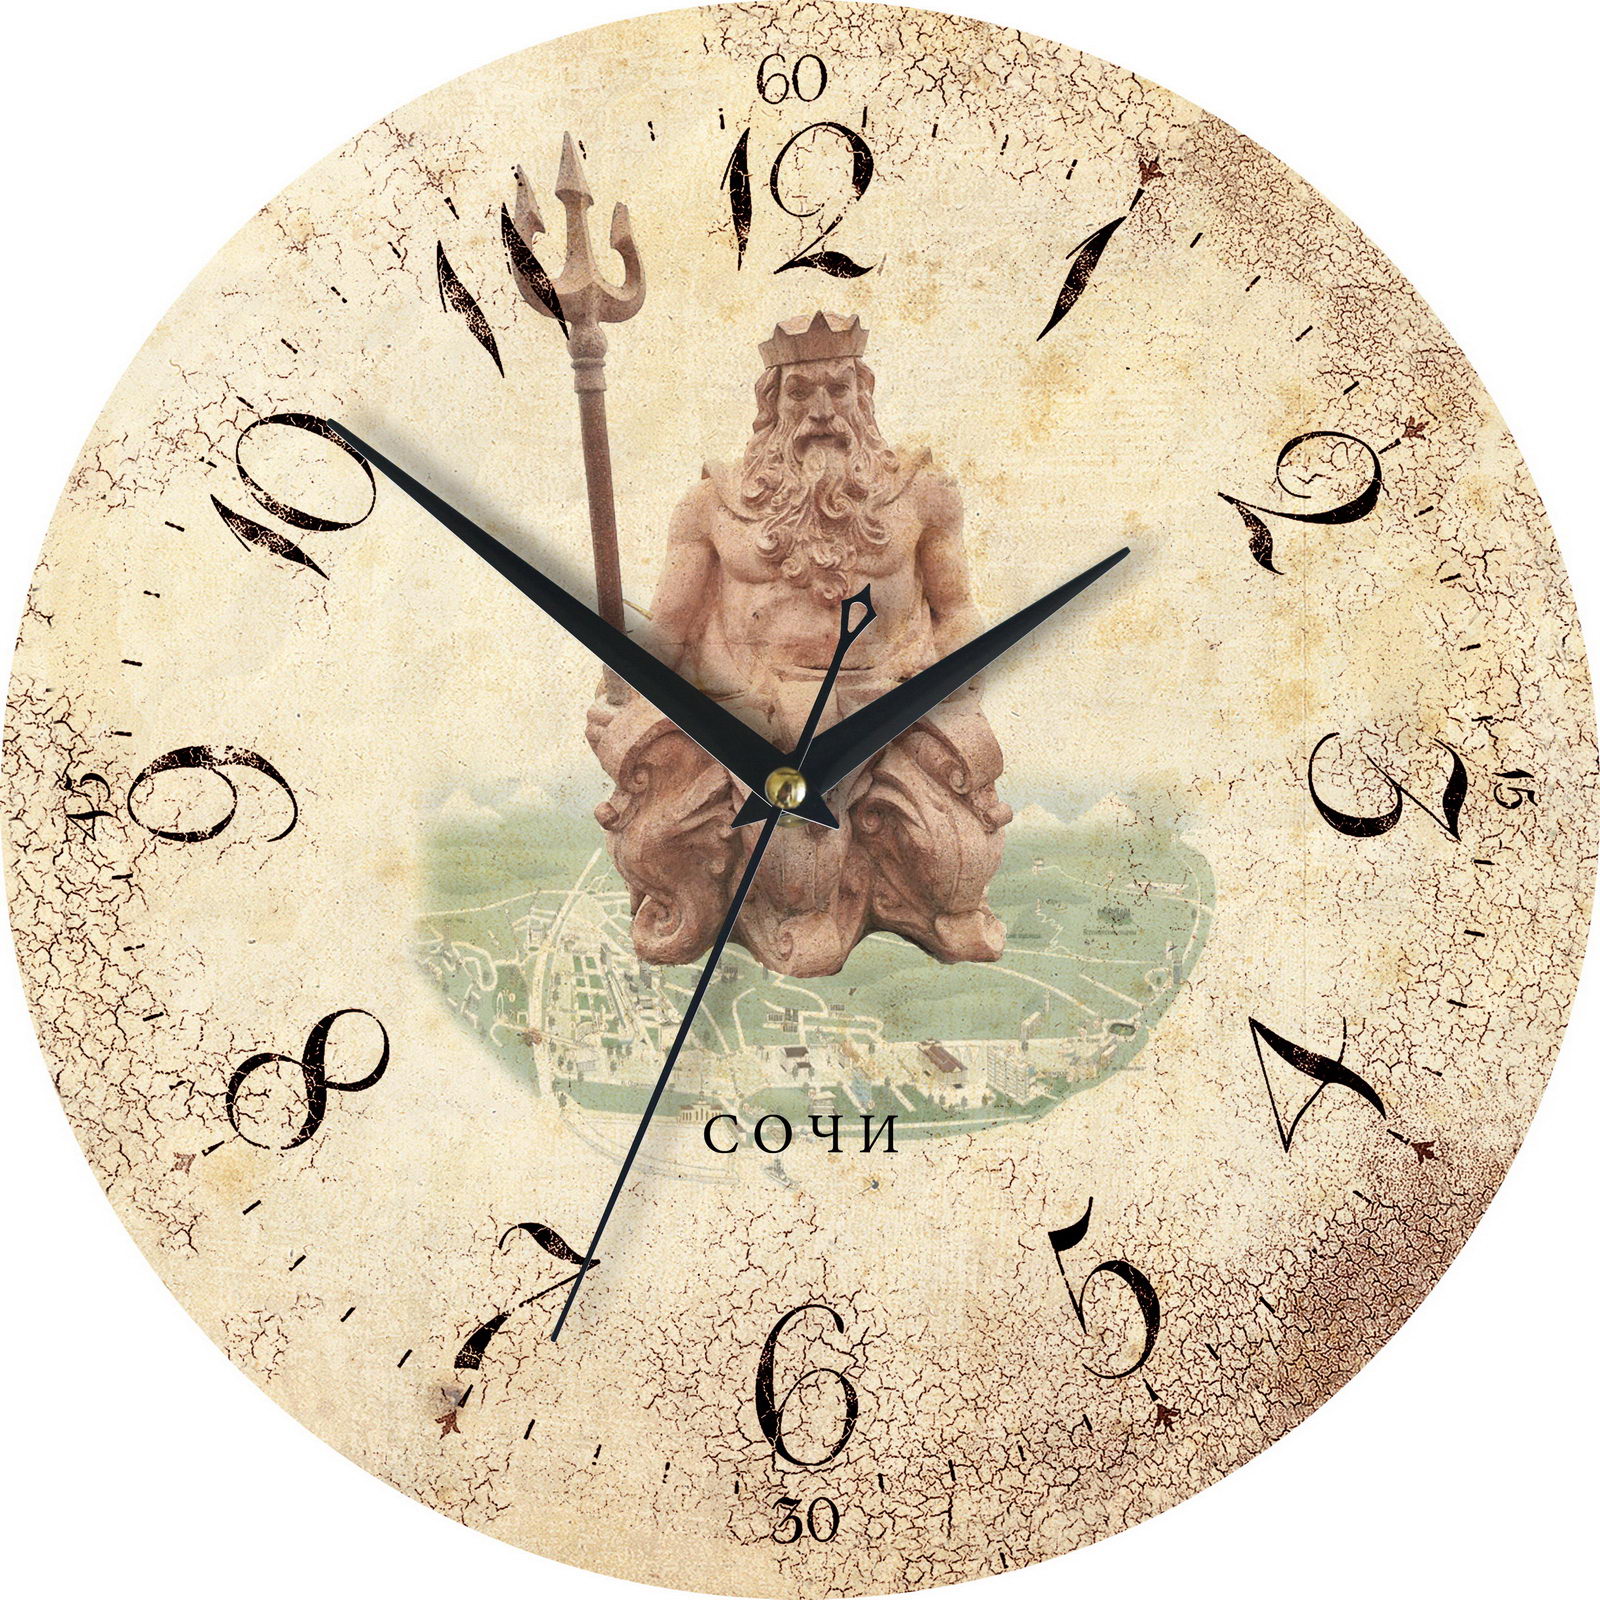 Прием часов сочи. Настенные часы из Сочи. Часы настенные морская тематика. Часы Сочи сувенирные. Настенные часы в Сочи.